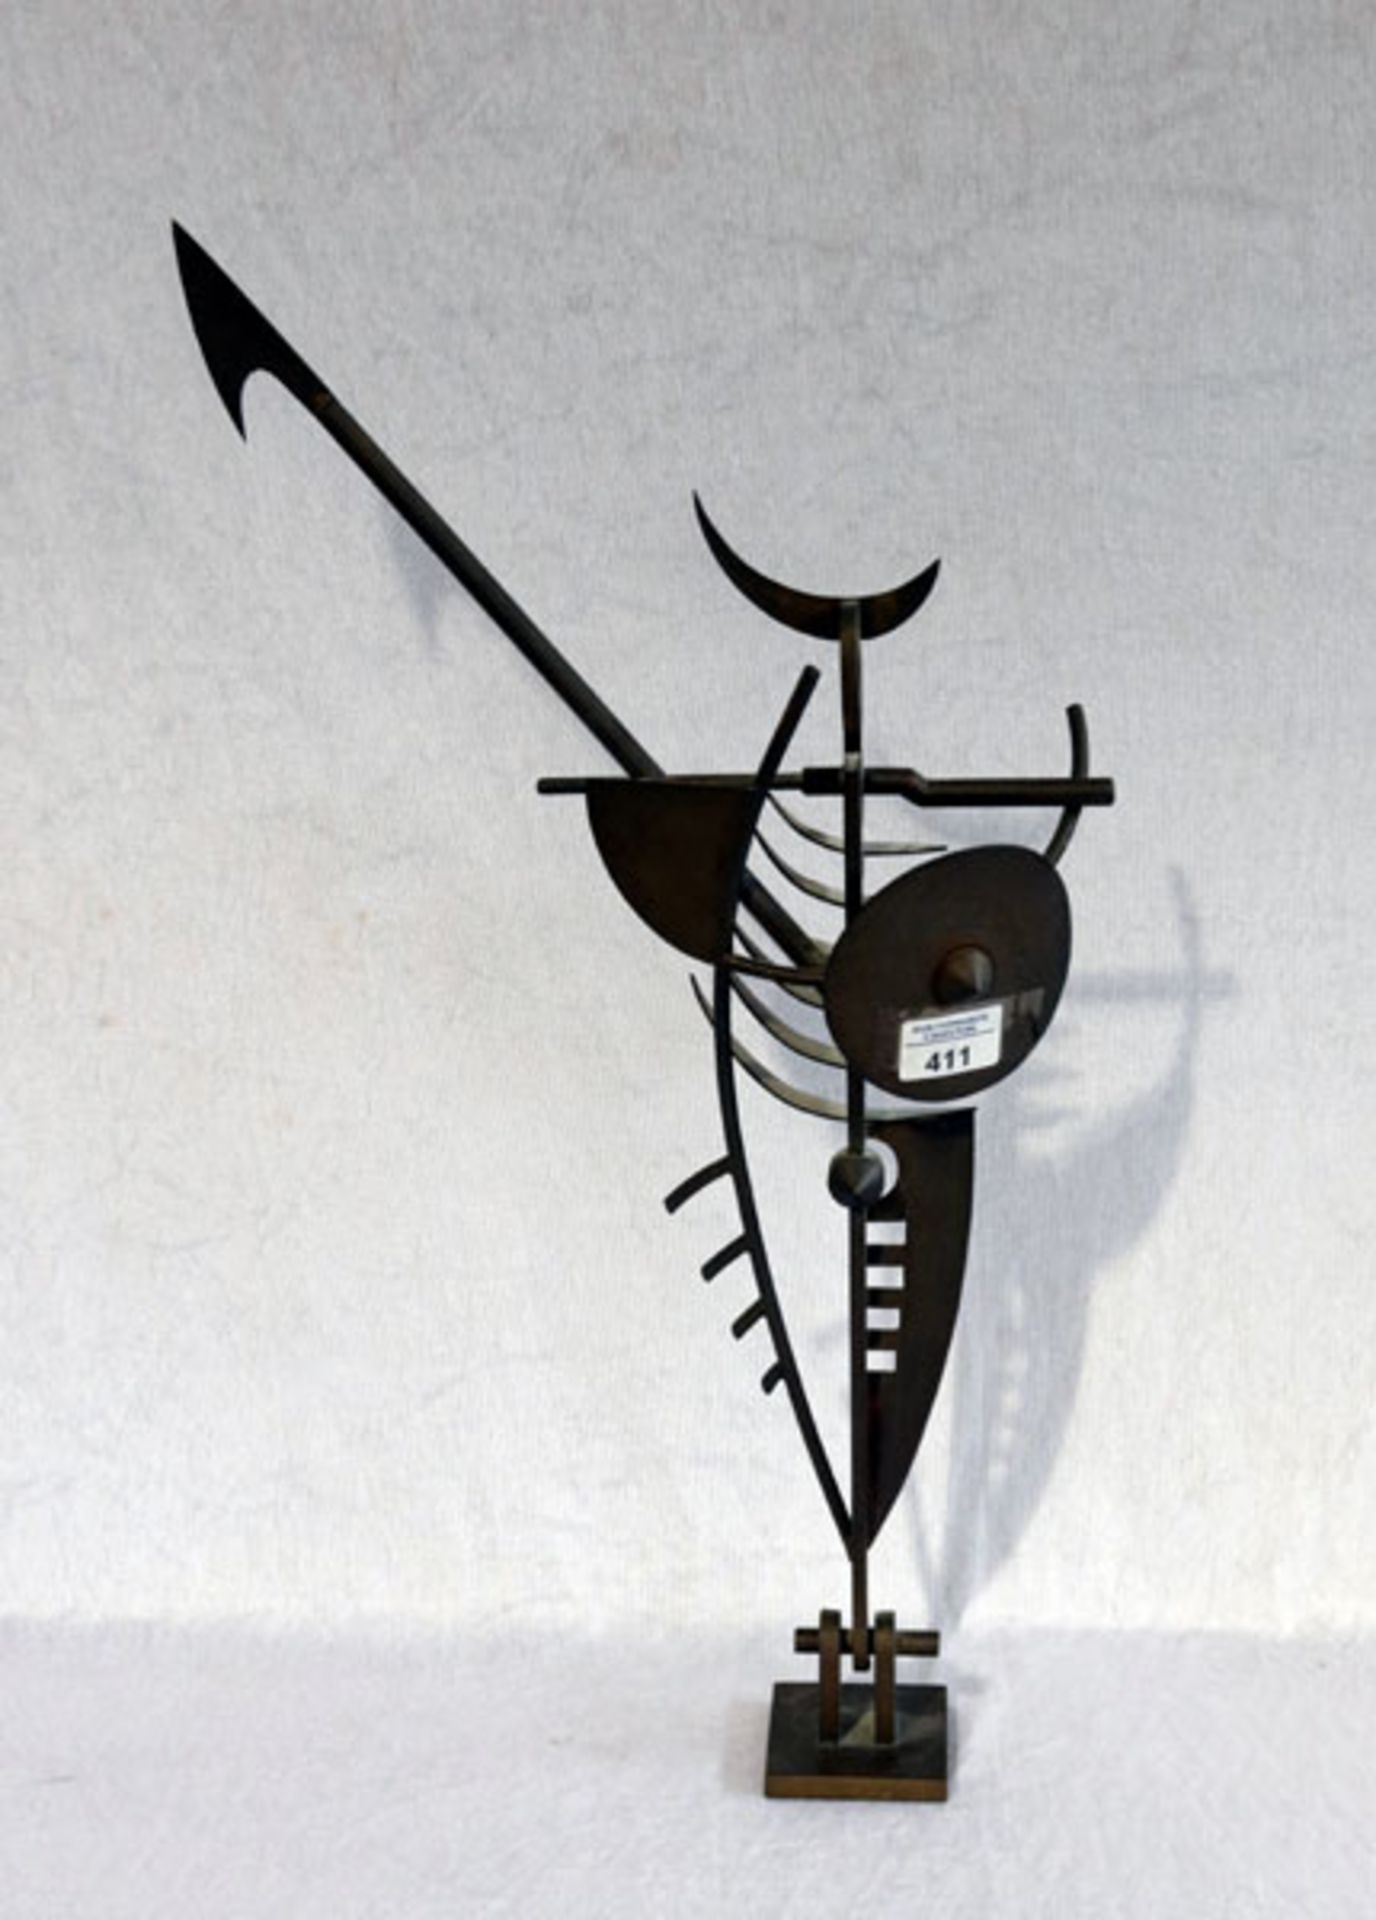 Metall Figur 'Zeitwächter 1930', signiert Odenwaeller 94, H 58 cm, B 34 cm